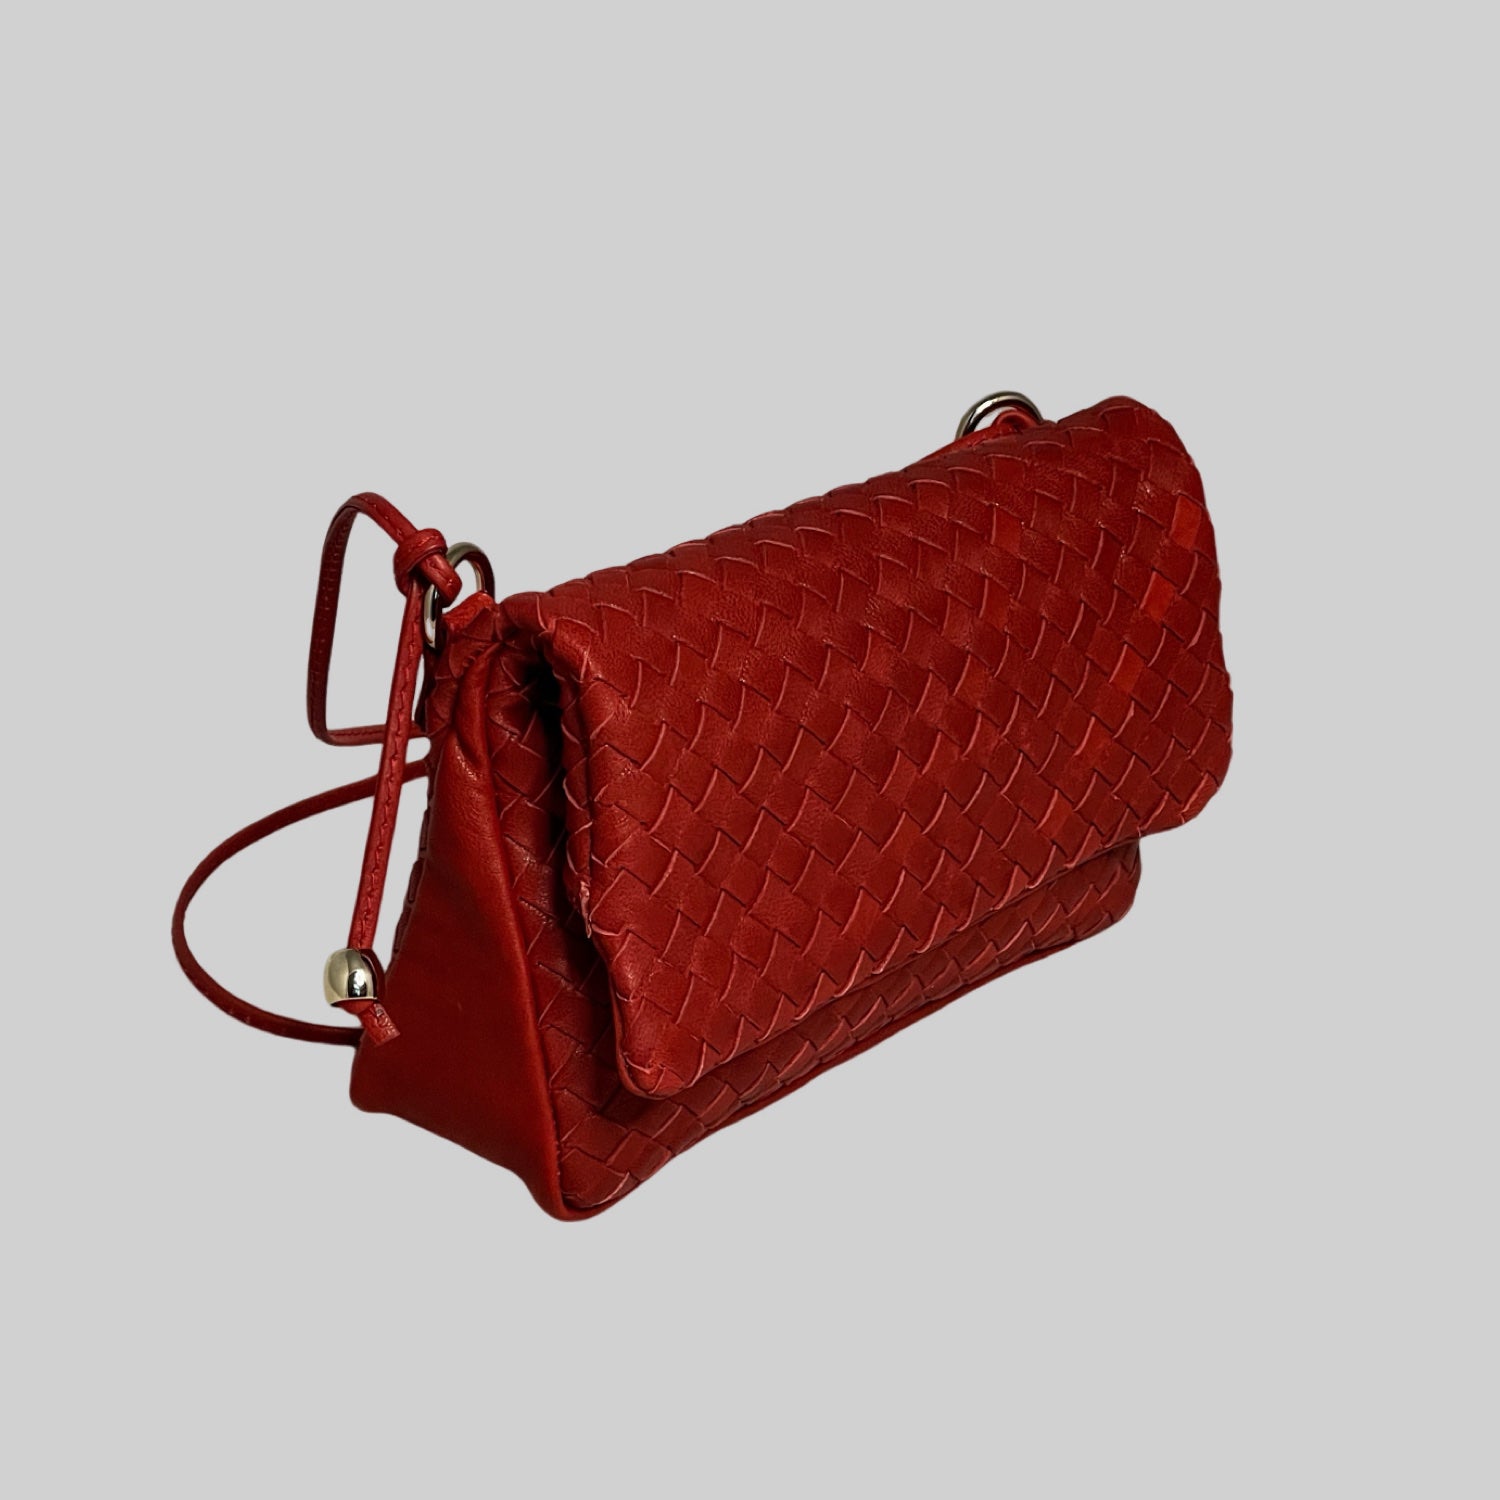 Ribichini Undercover veske i rødt: kompakt, sikker lukking med magneter, elegant design. Sidevisning viser brettemekanismen.